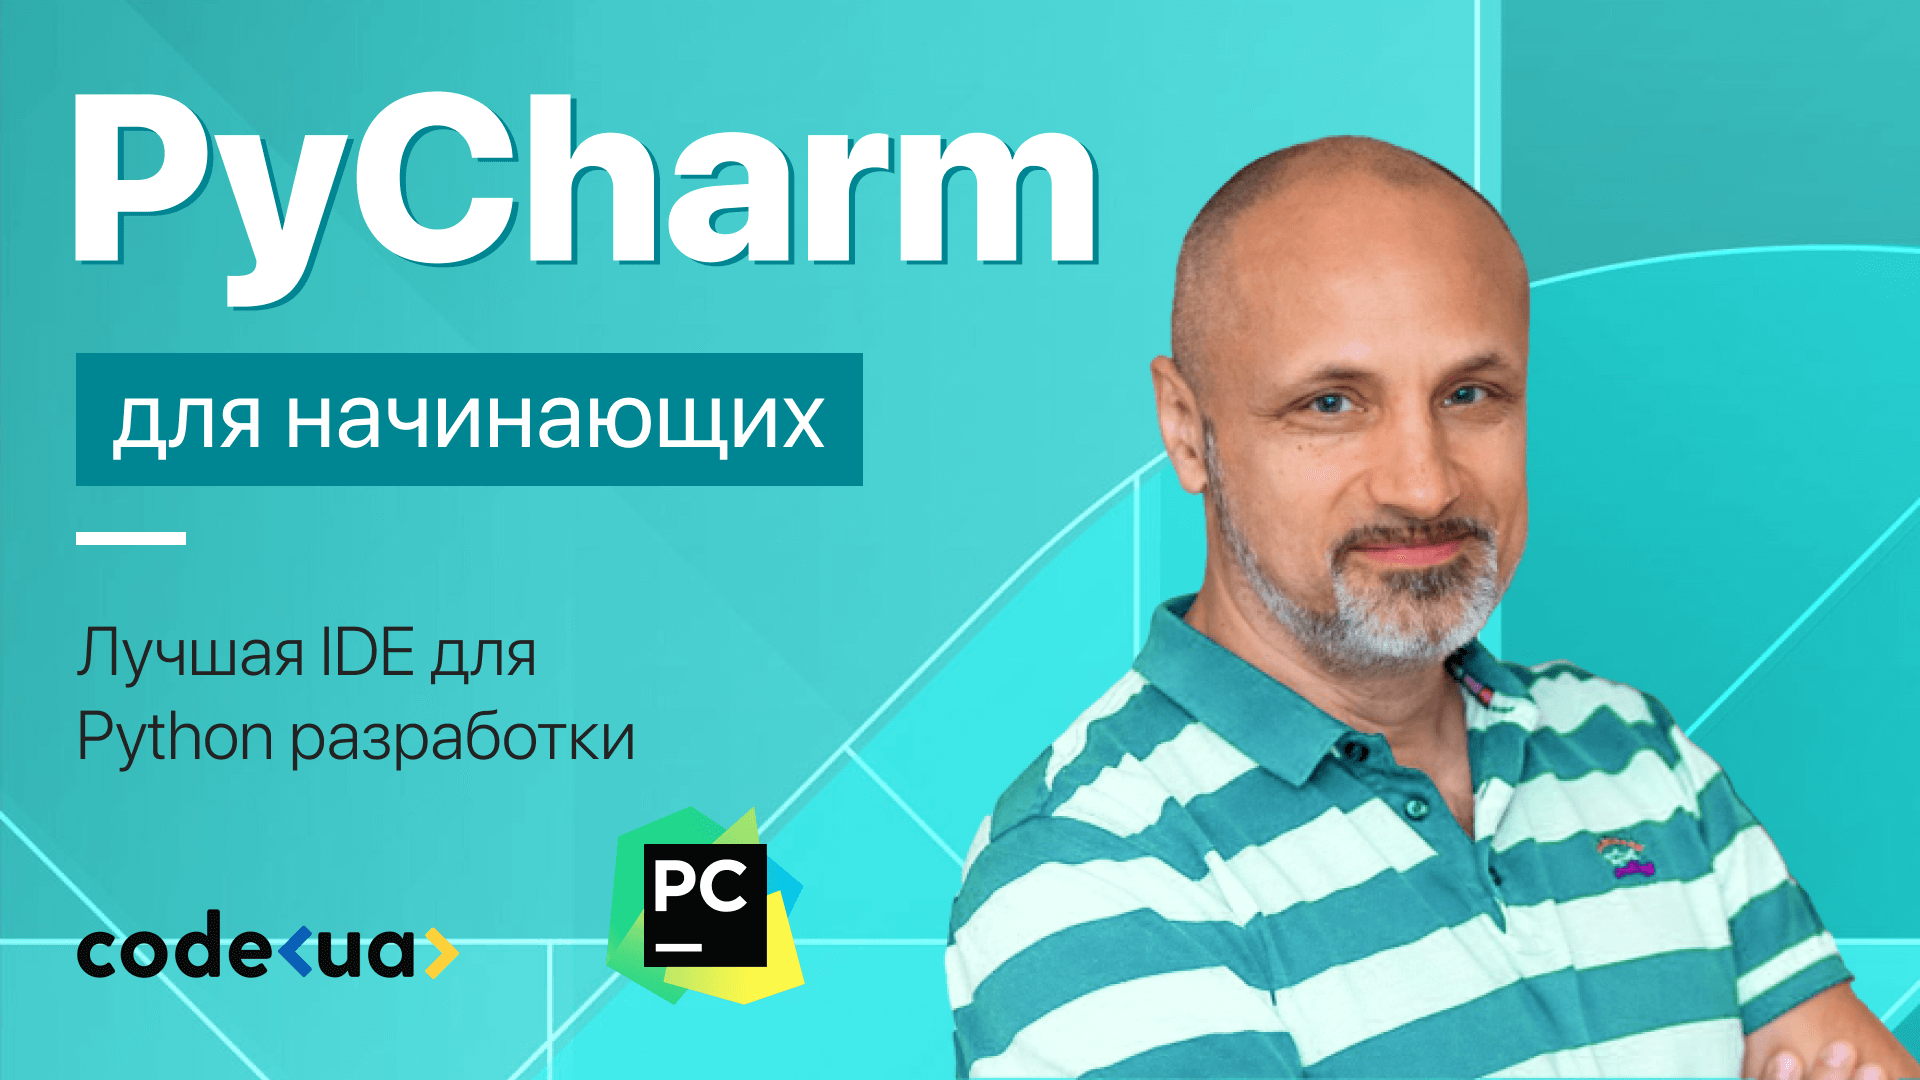 PyCharm с нуля. Лучшая IDE для Python разработки